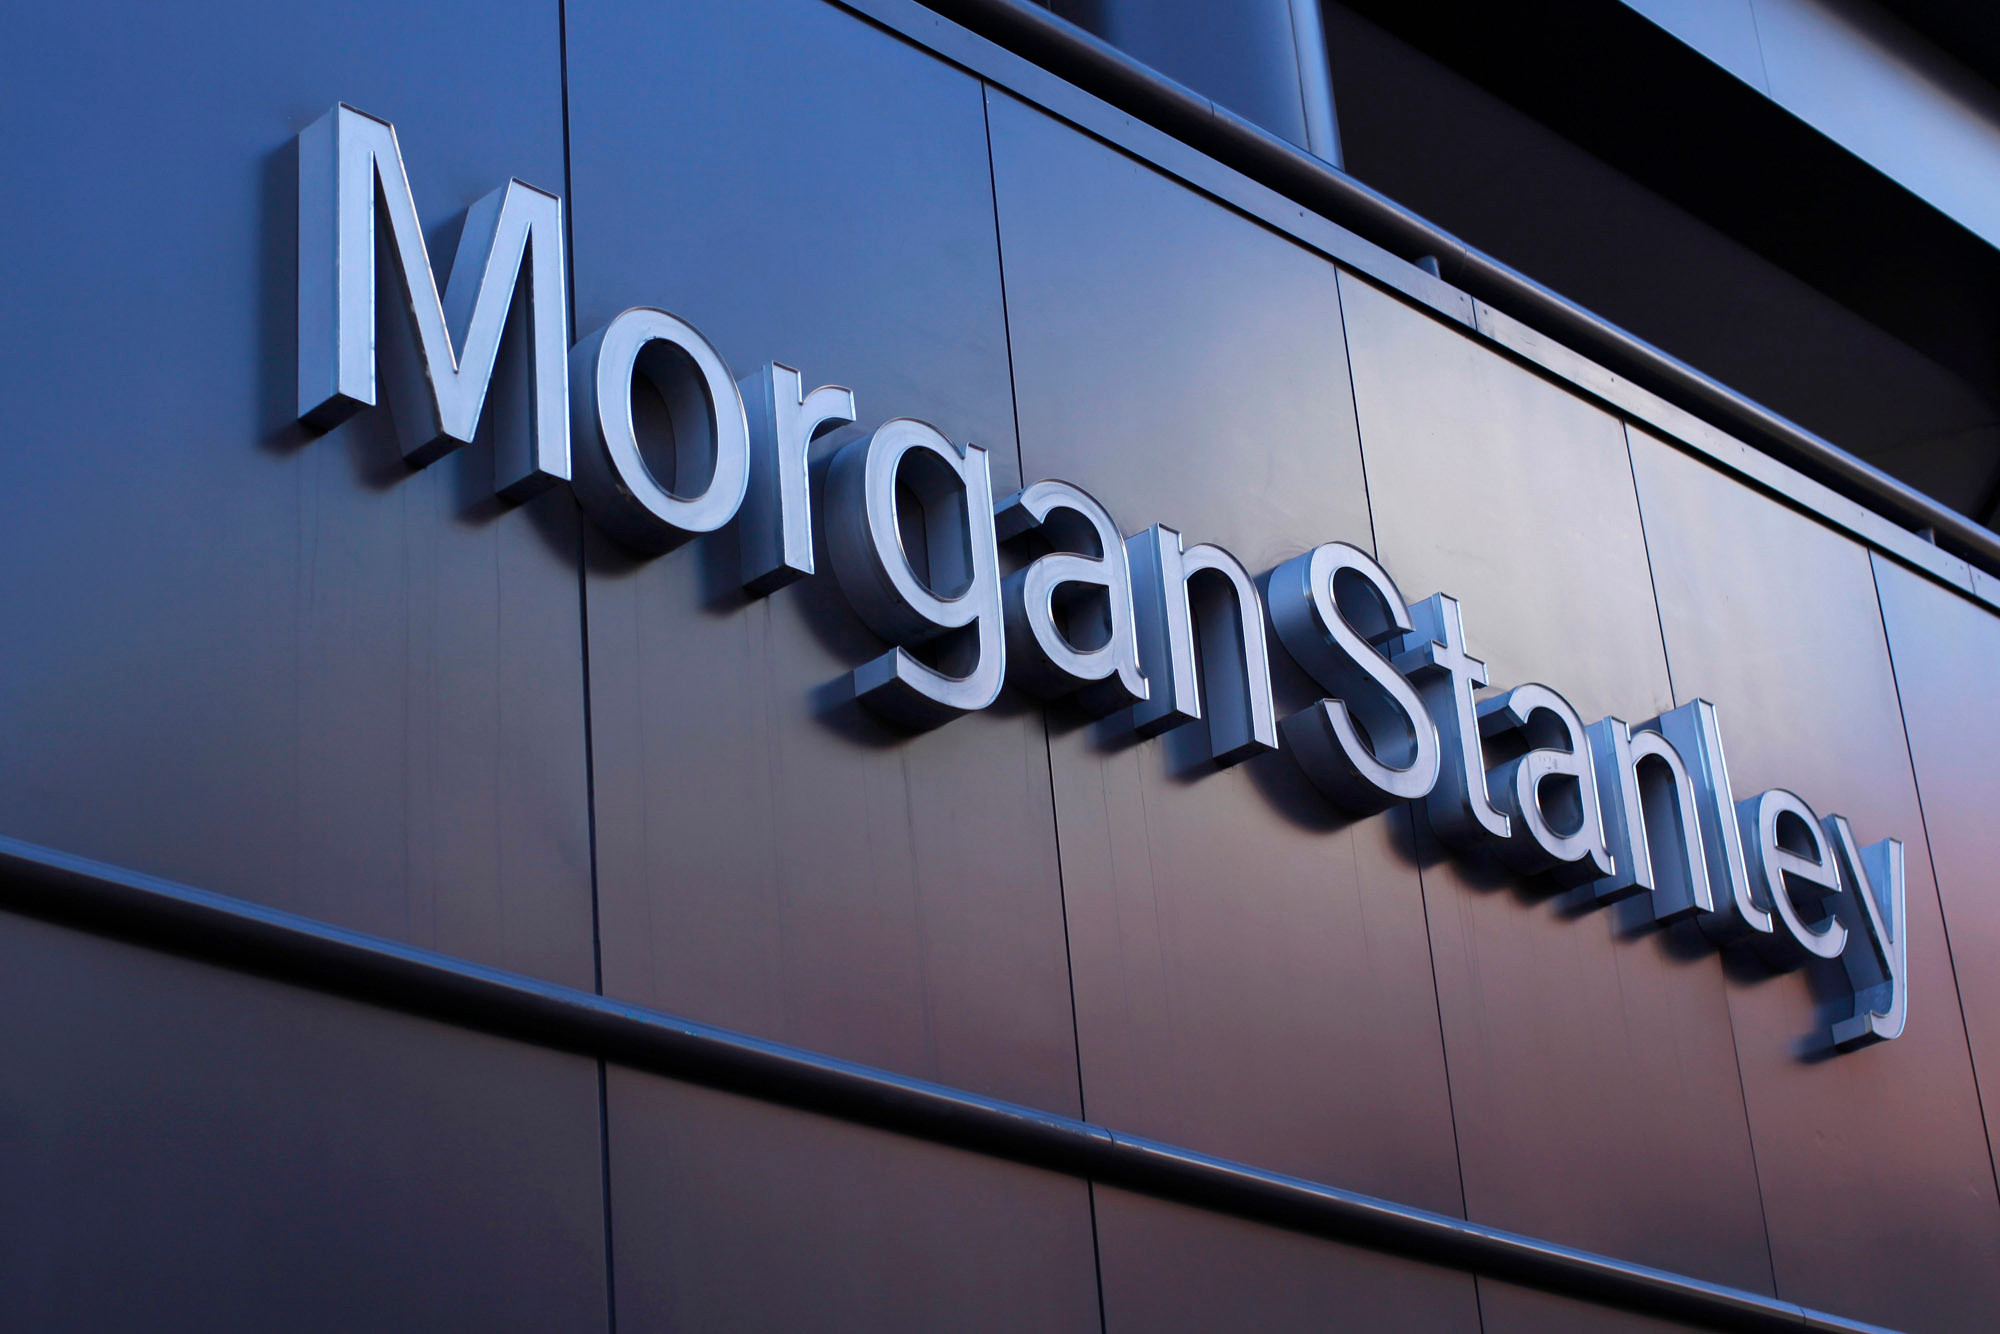 Morgan Stanley petrol tahminini düşürdü